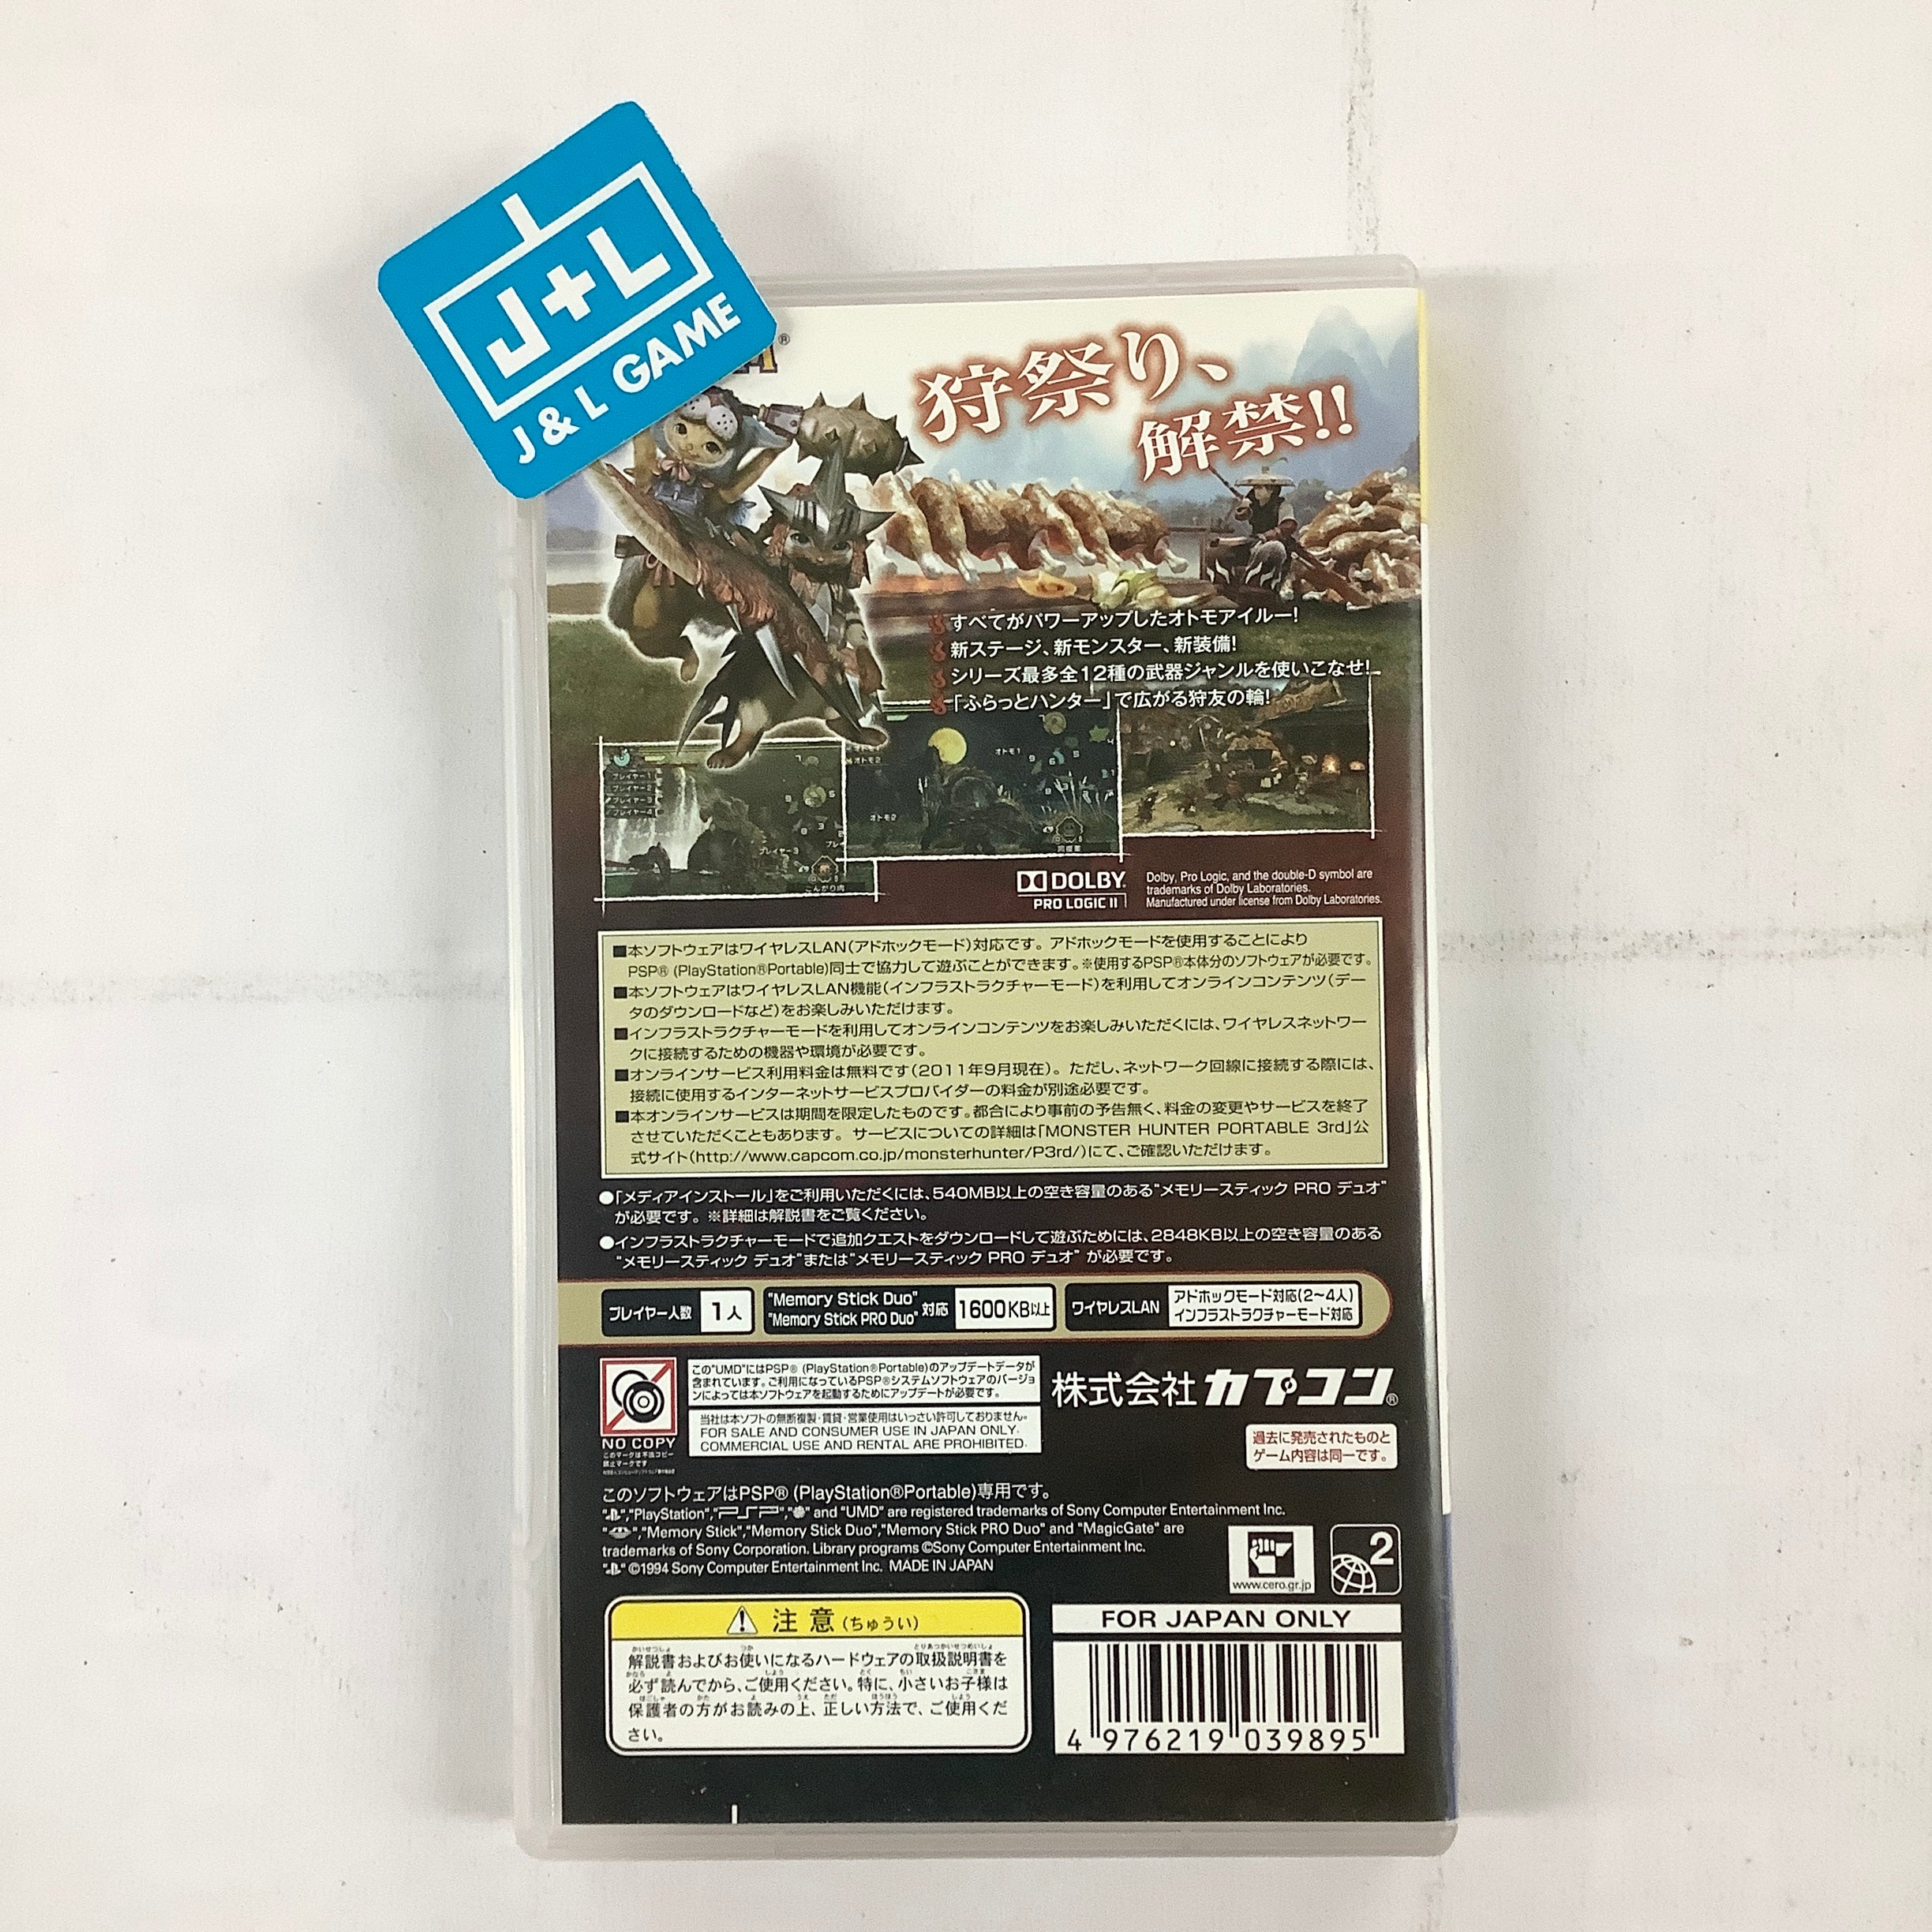 Monster Hunter Portable 3rd (PSP the Best) - Sony PSP [Pre-Owned] (Japanese Import) Video Games Capcom   